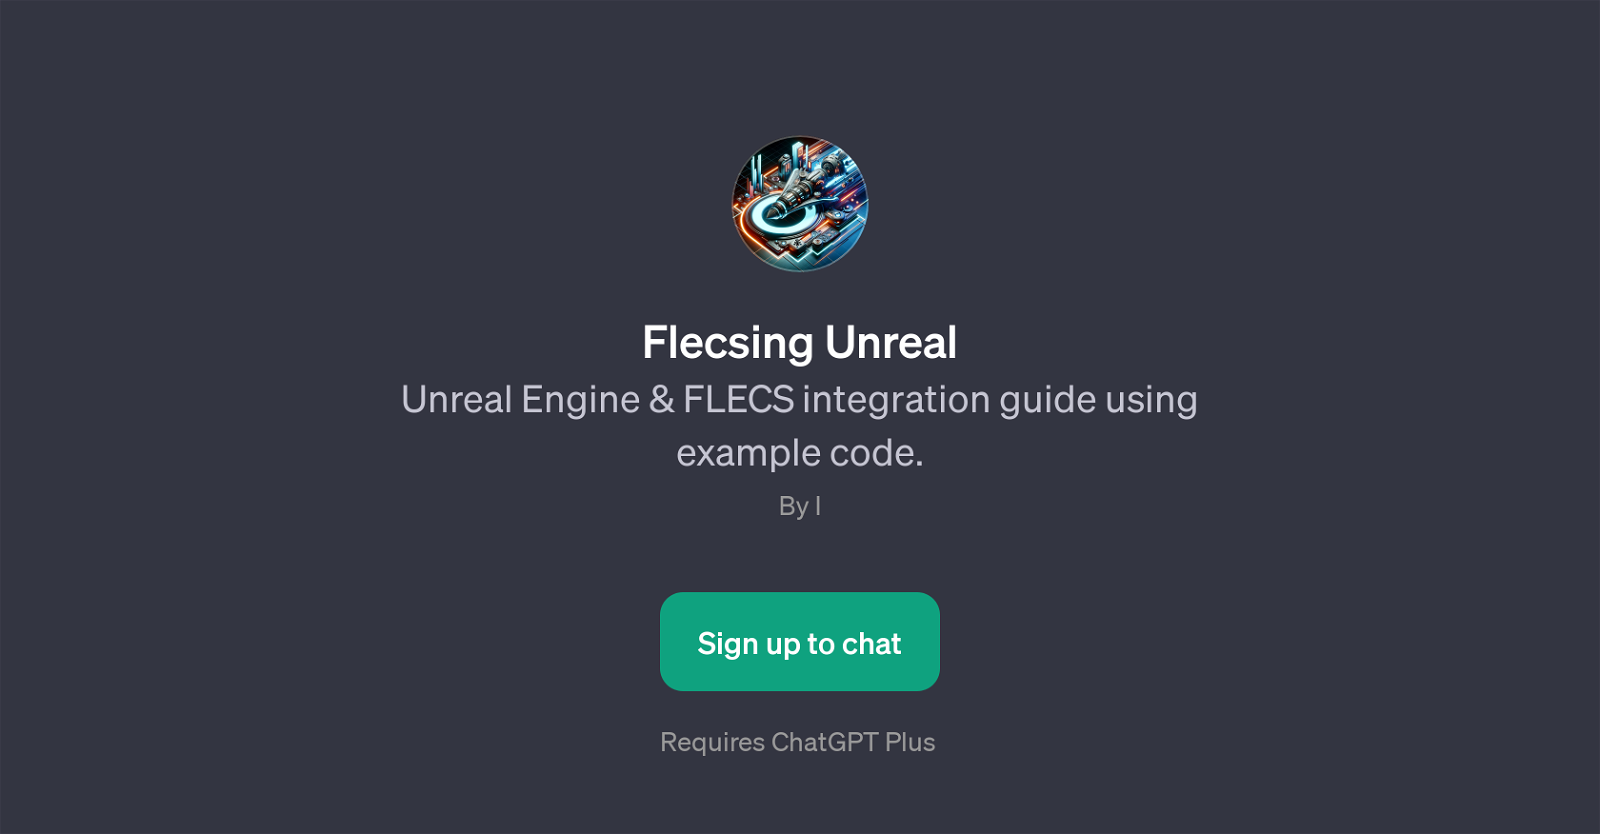 Flecsing Unreal website